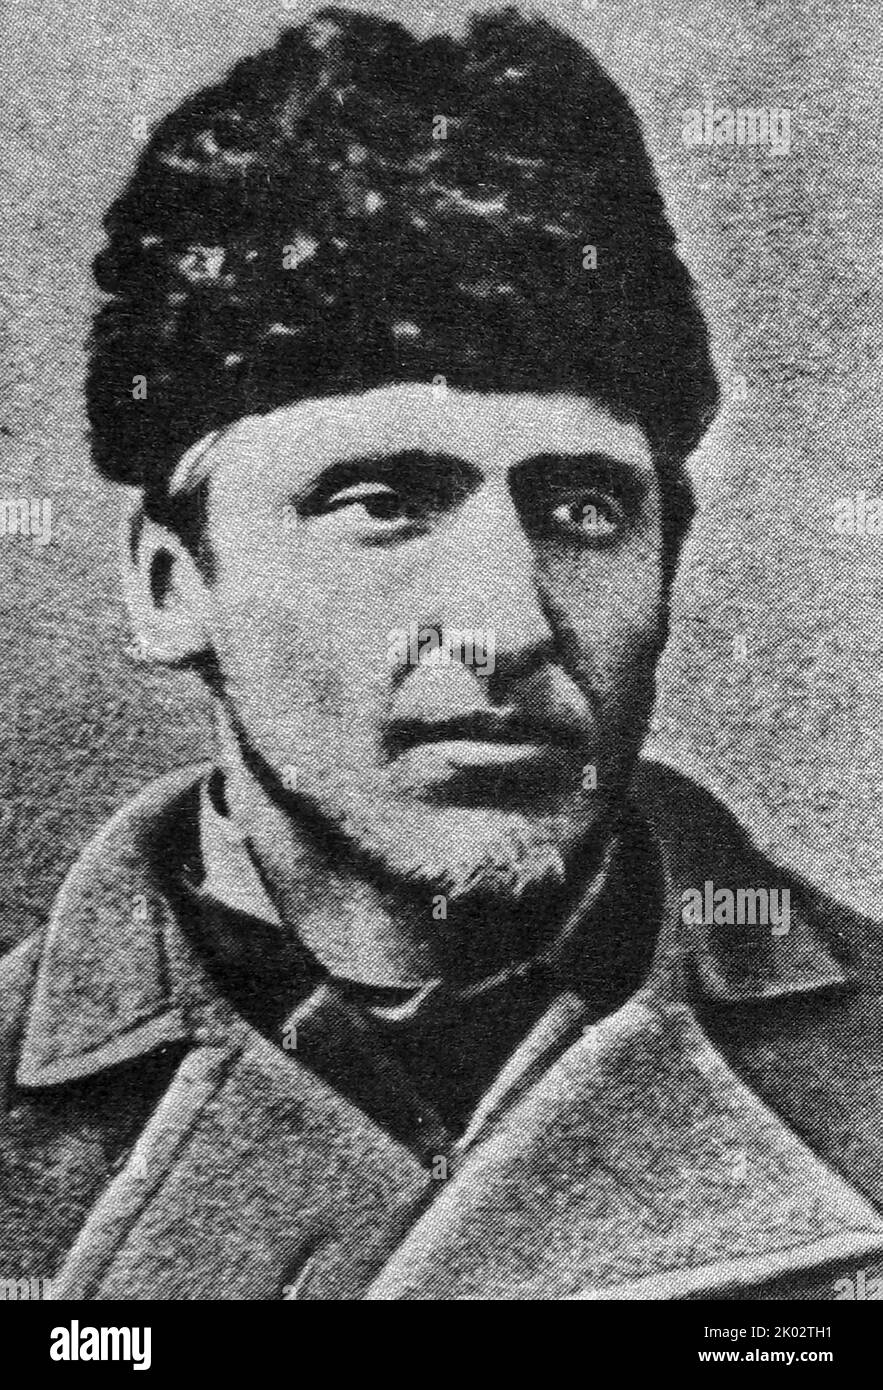 Ludwig Varynsky (1856-1889). Révolutionnaire polonais, fondateur du parti prolétariat. Arrêté en 1883 et condamné à la prison à vie. Il est mort à la prison de Shlisselburg. Banque D'Images